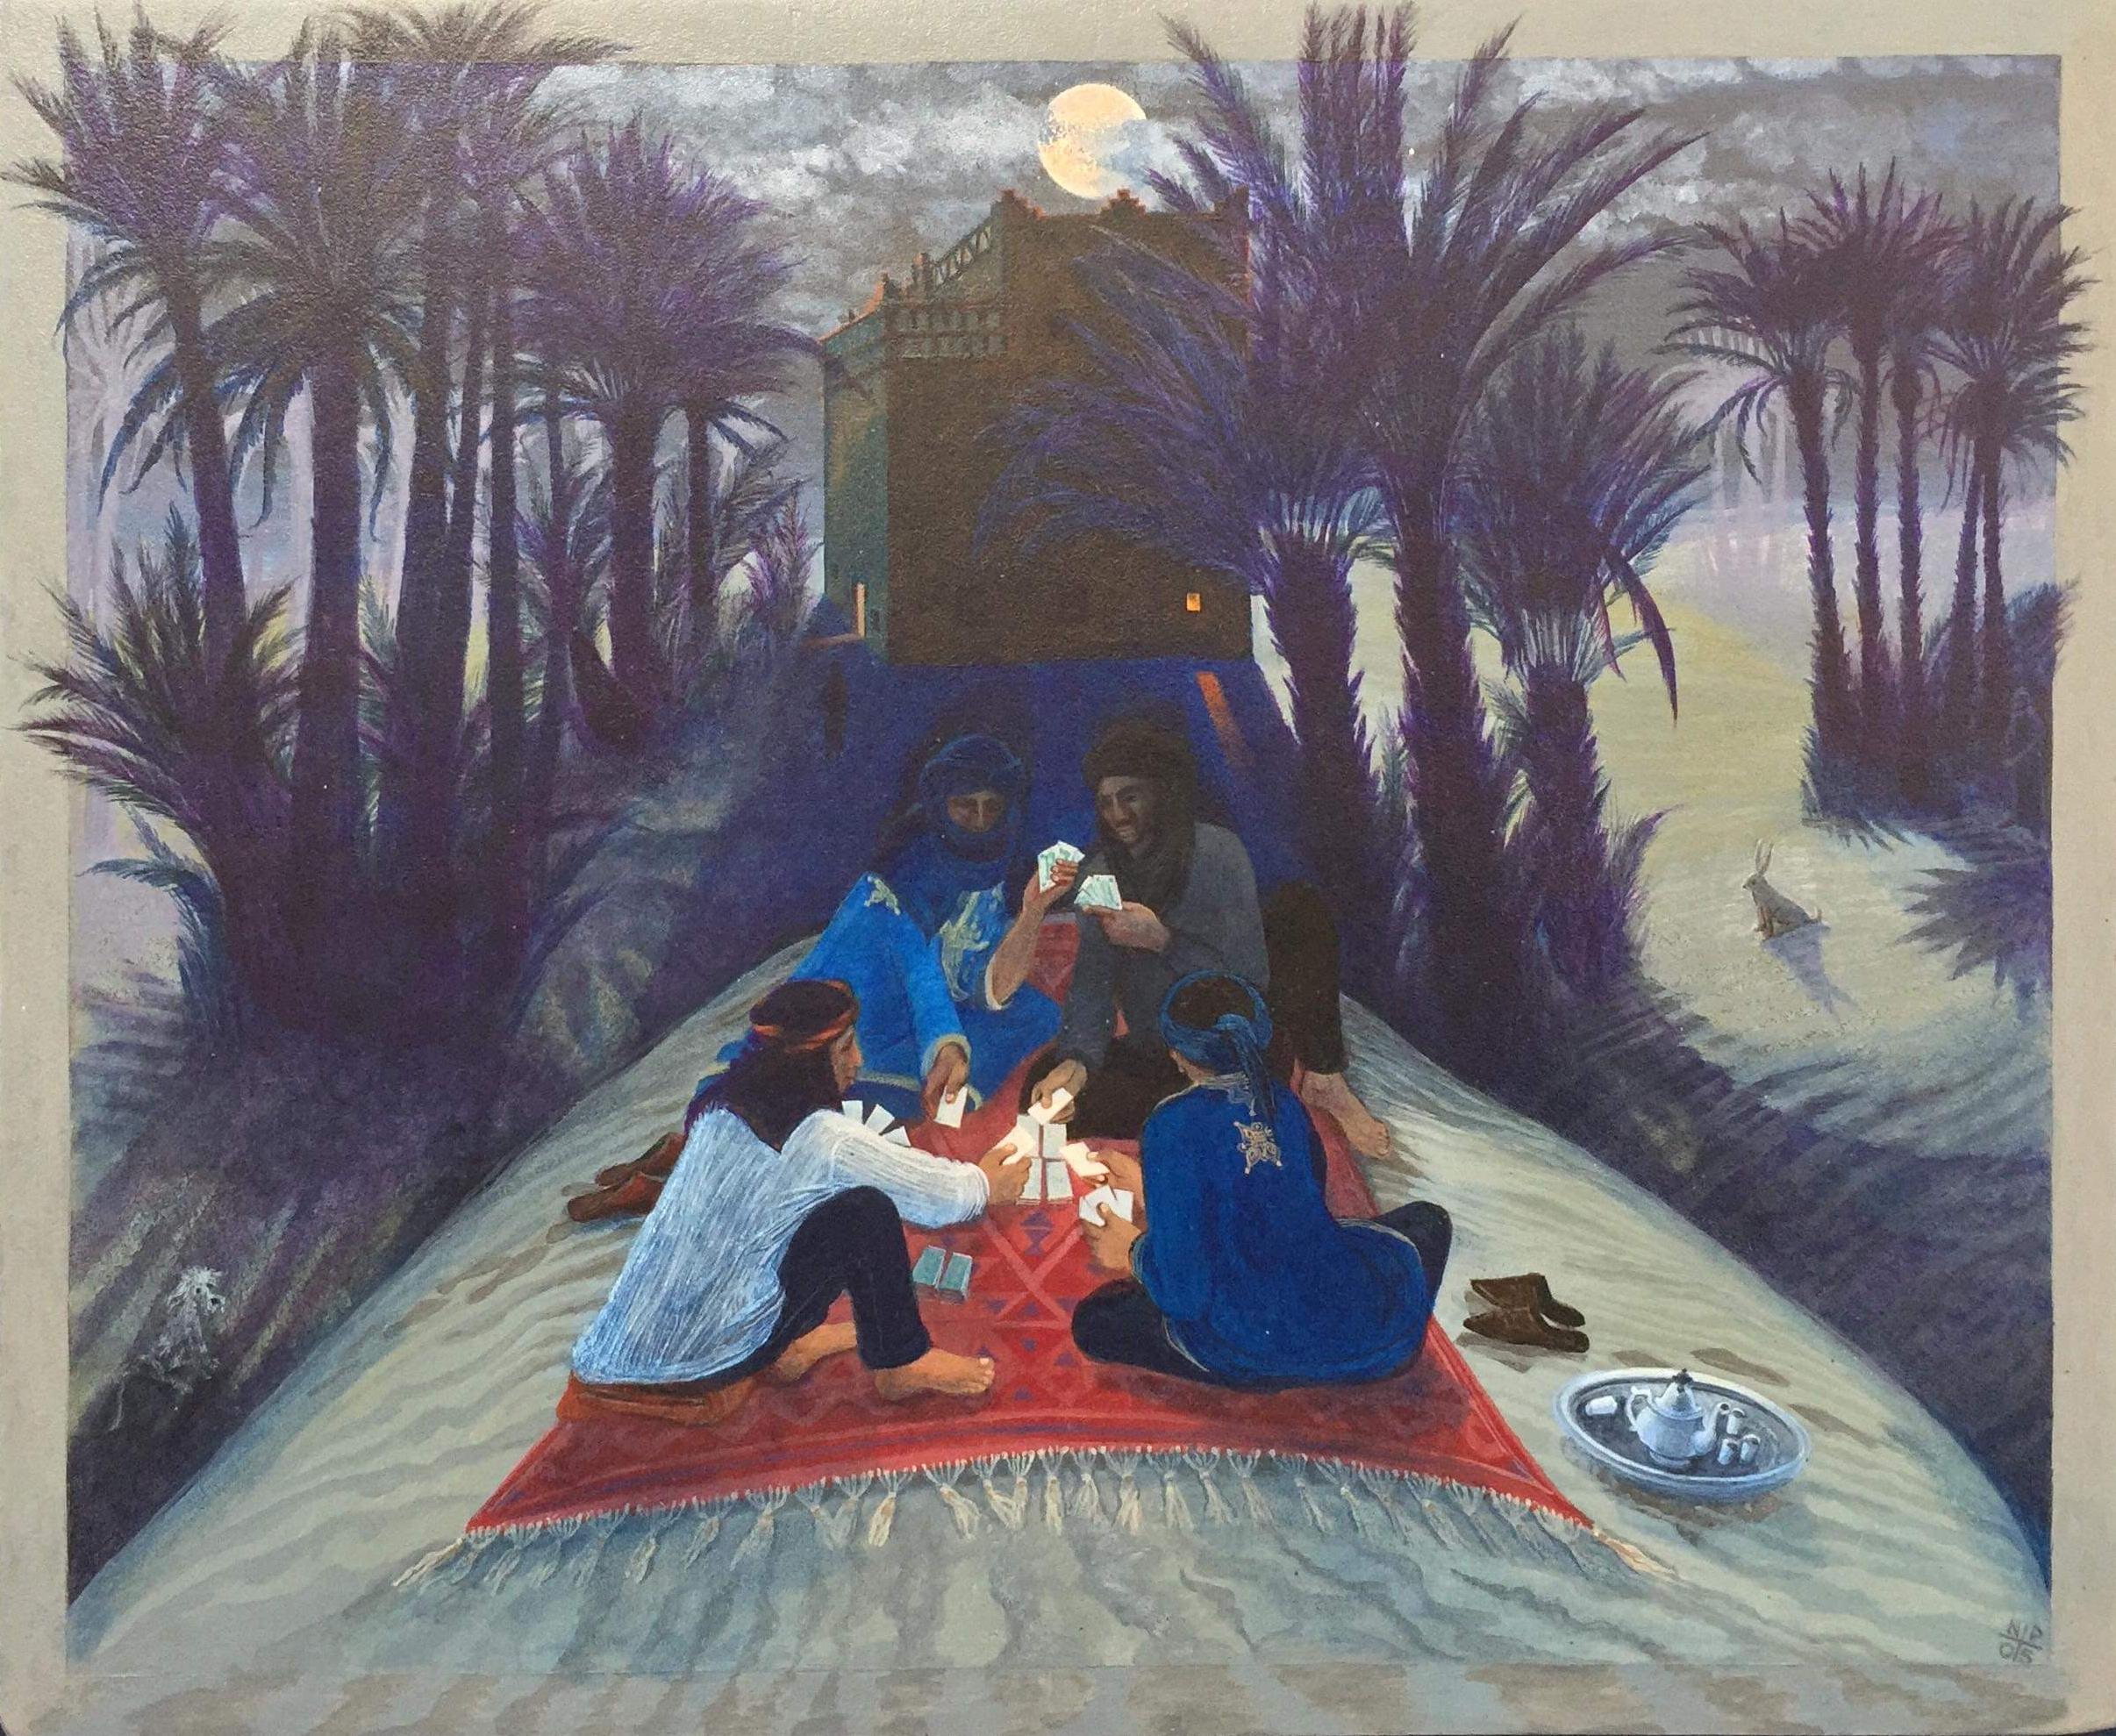 Peinture d'art populaire du Maroc, clair de lune, dunes du désert, palmiers sous la lune - Painting de Nancy Patterson